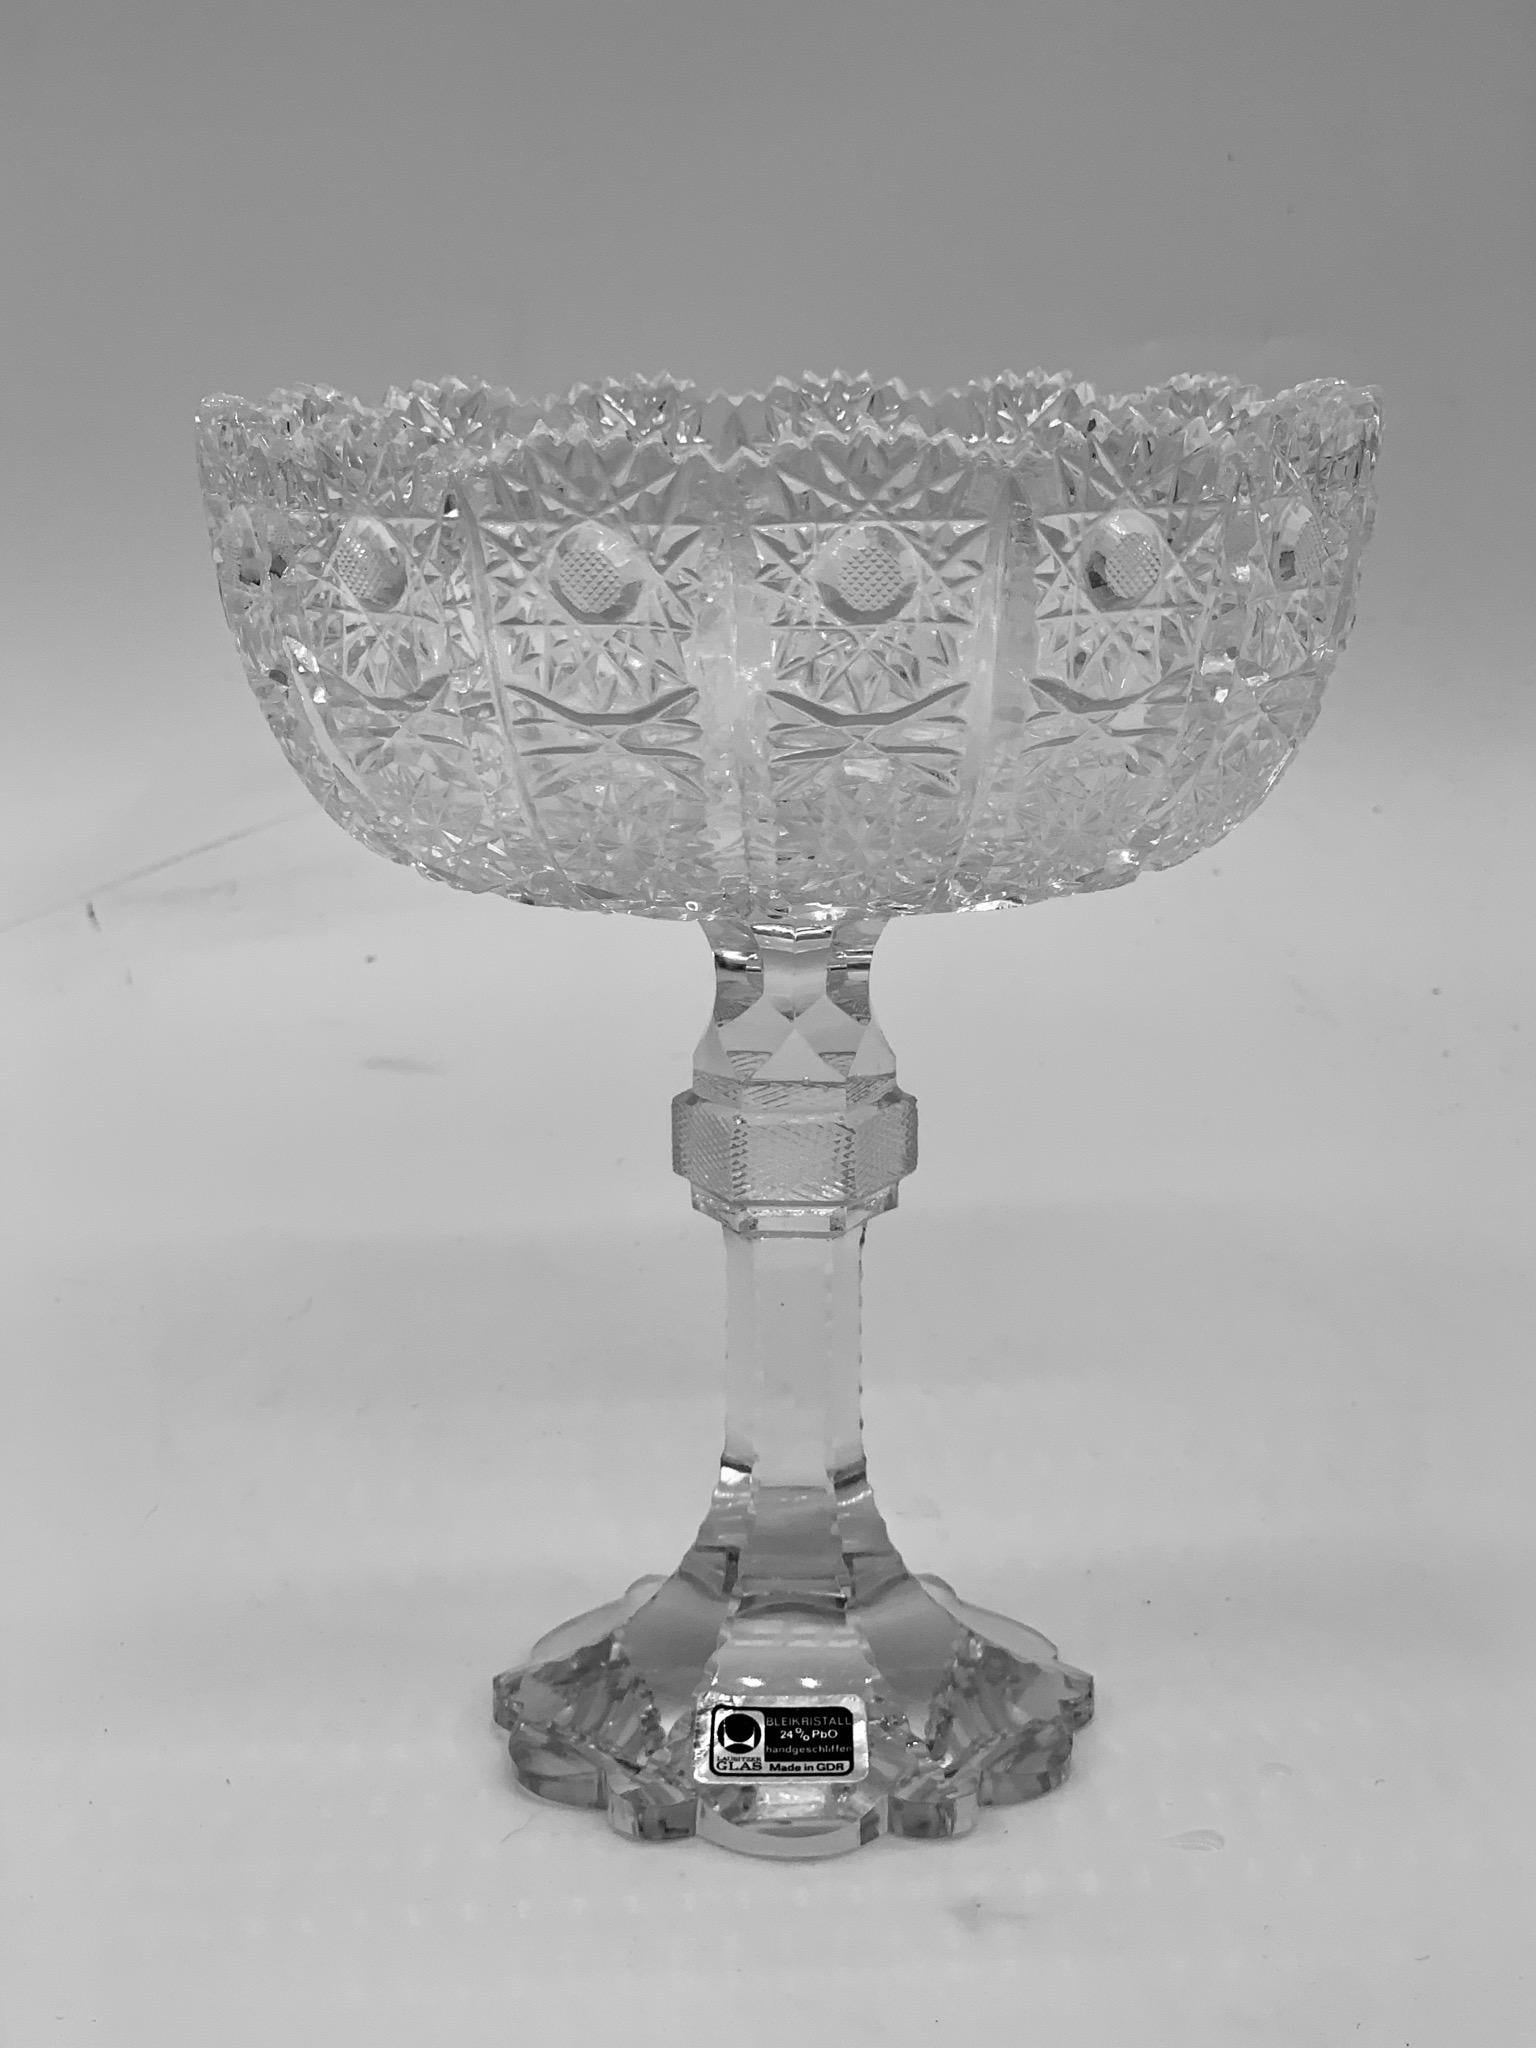 1945-1950 Servierschüssel aus Bleikristall mit wunderschönen, fein geschliffenen Mustern. Perfekt als Mittelstück oder als Serviergeschirr.